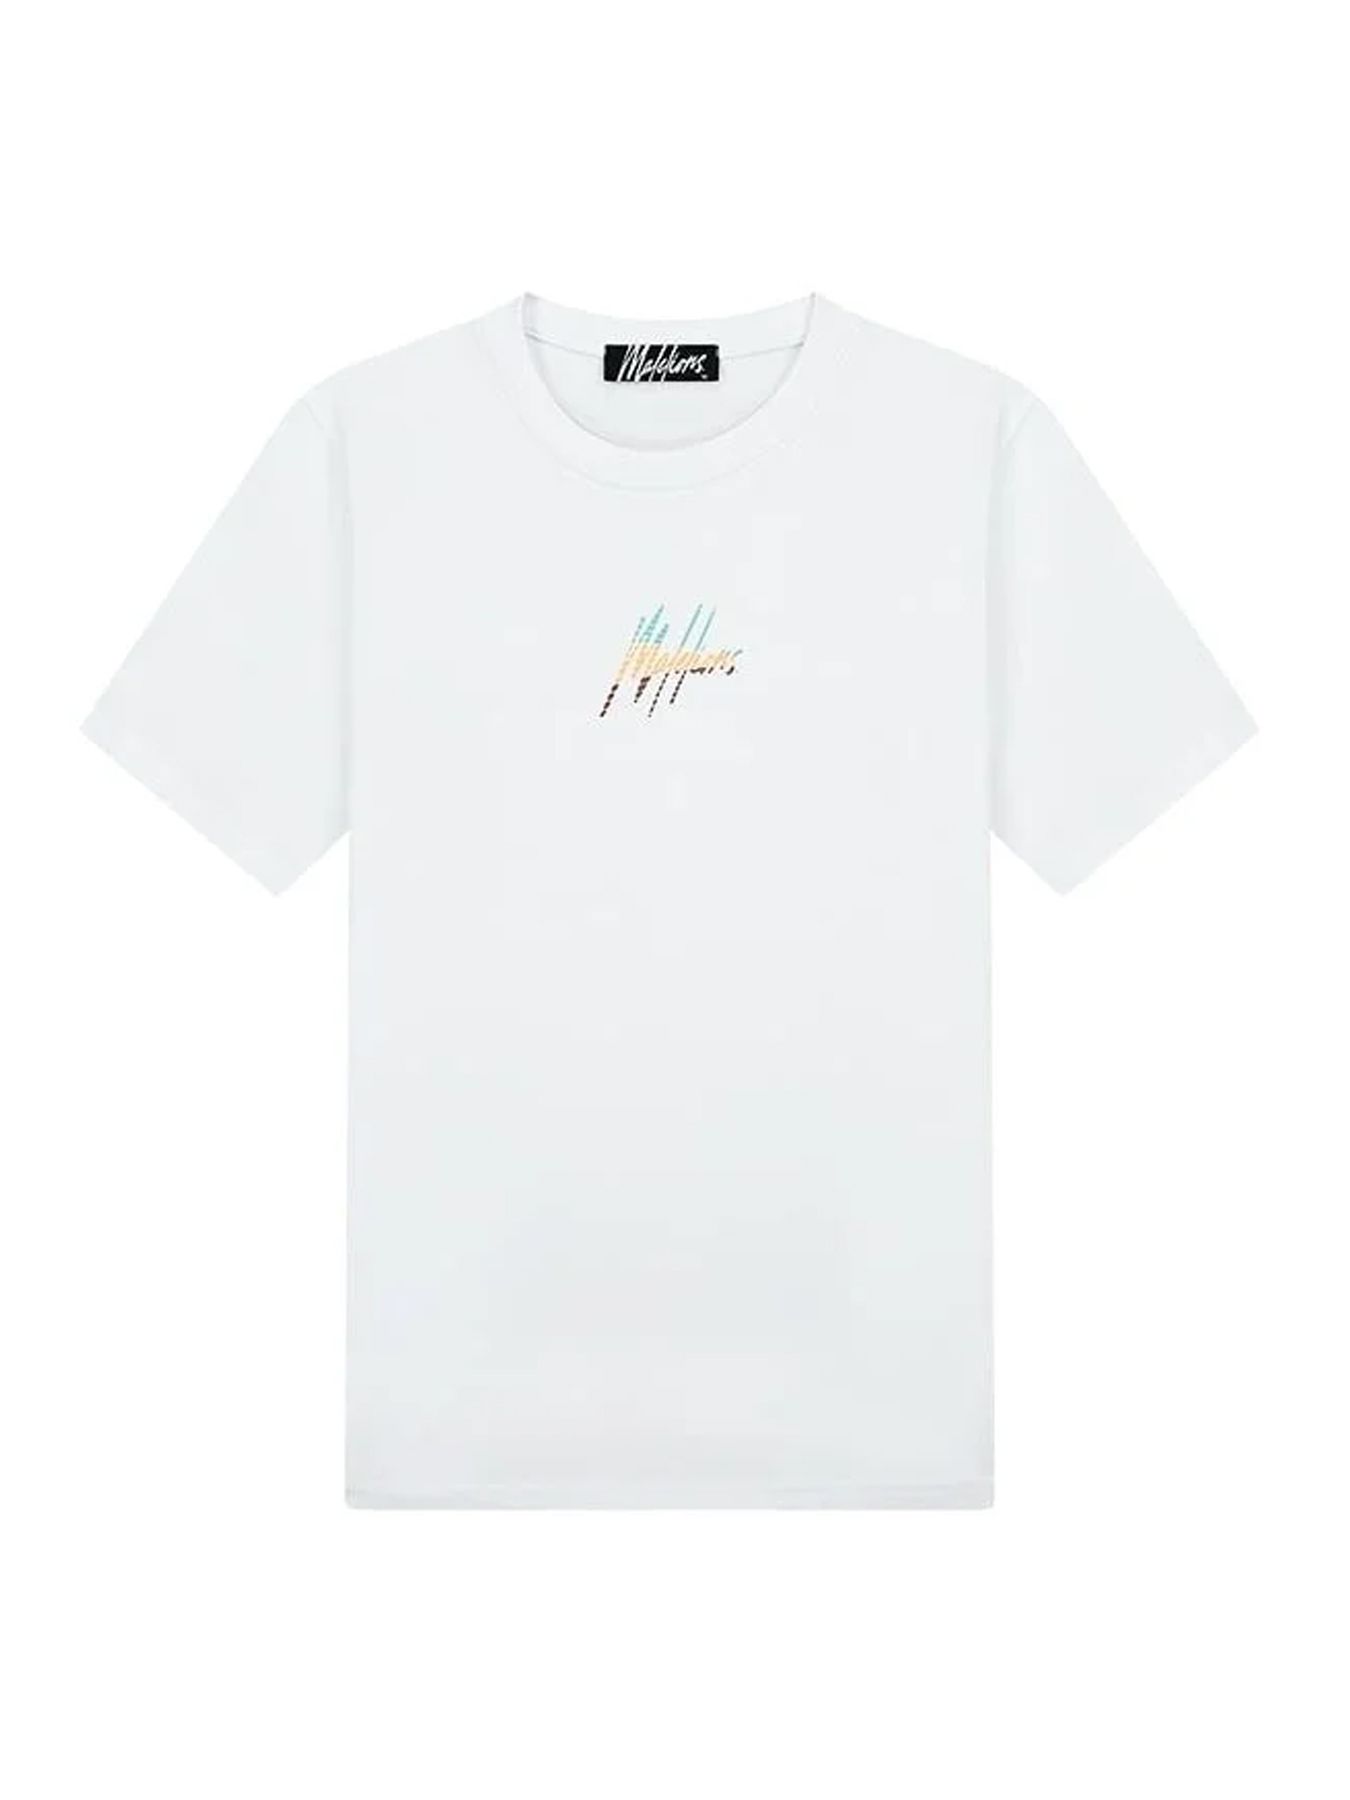 Malelions Men casa t-shirt White 00109026-900